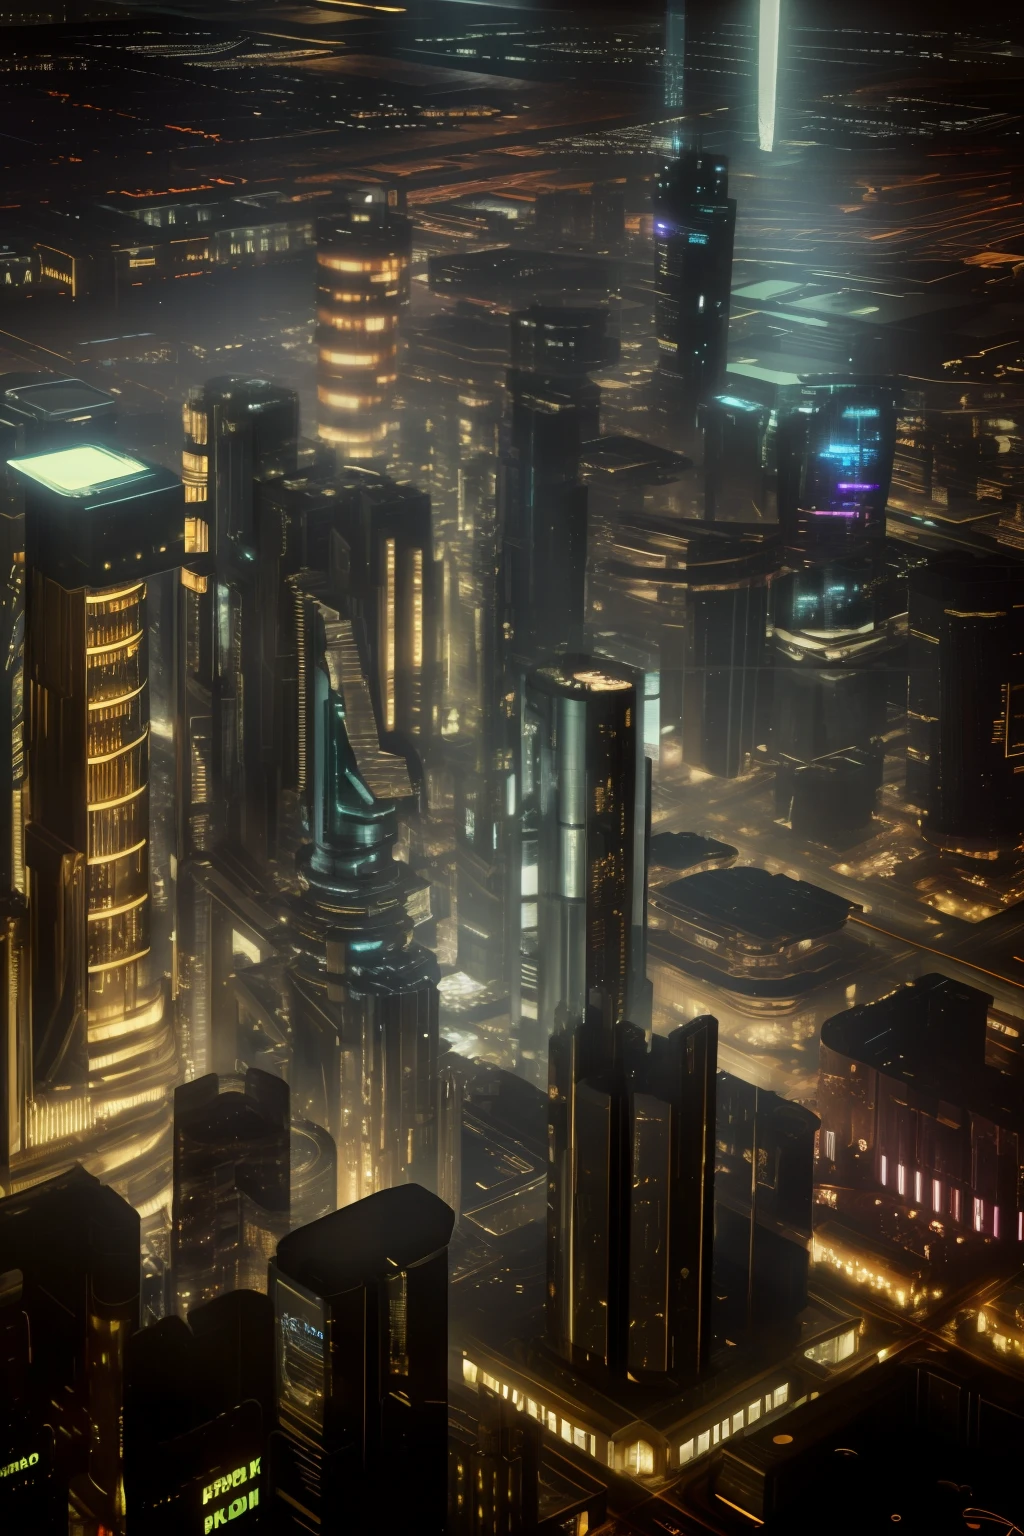 دقة عالية, تحفة, جودة عالية, تفاصيل غنية, خلفية 8K, مدينة السايبربانك, أسلوب Steampunk, ليلة مع العديد من المباني المنتشرة, لقطة أمامية, لقطة من أسفل إلى أعلى.